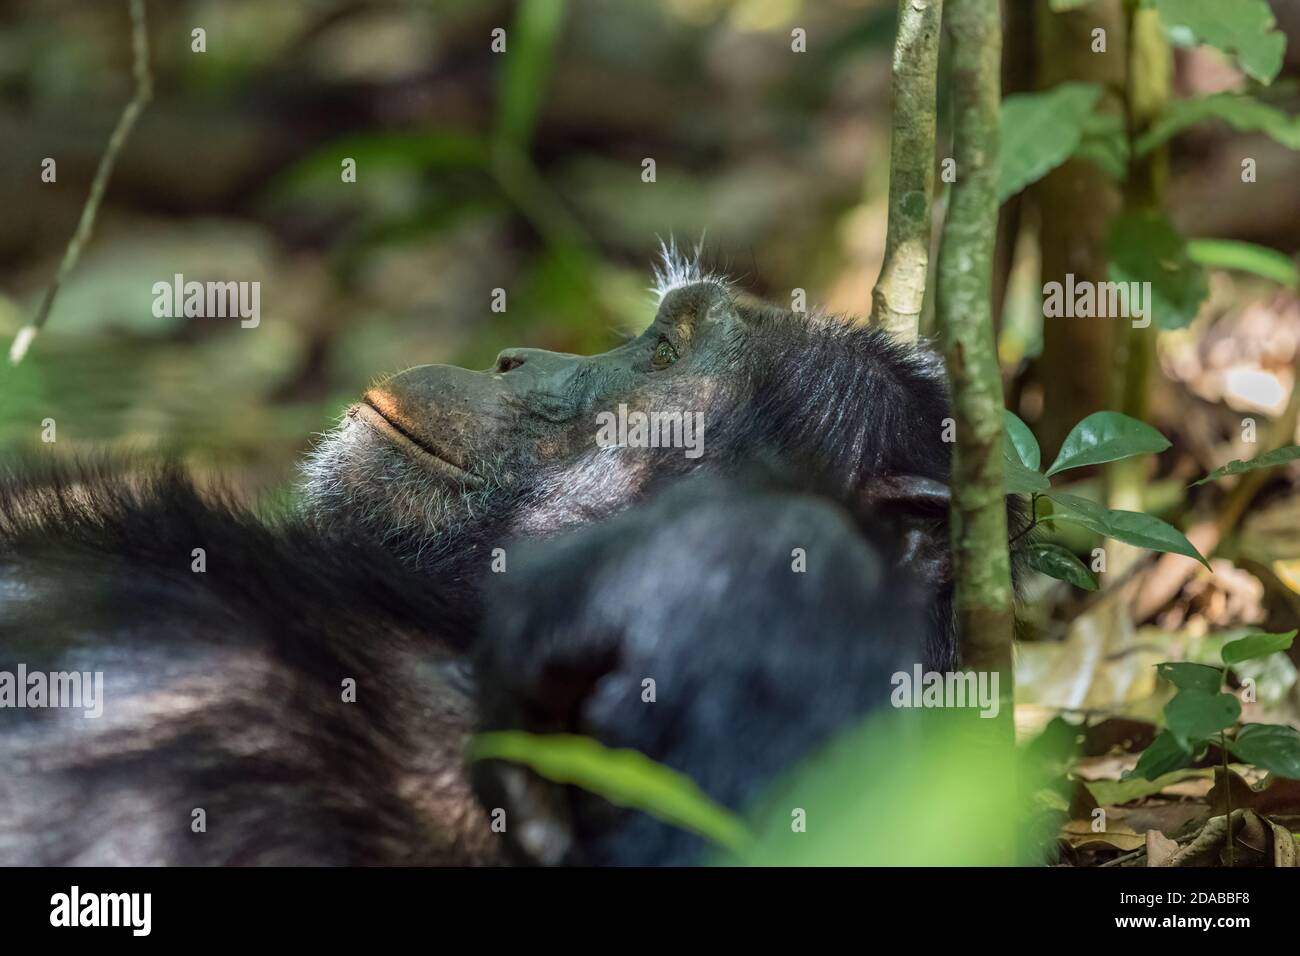 Vue rapprochée de la tête et de la face d'un Chimpanzé (Pan troglodytes) relaxant dans la forêt, parc national de Kibale, ouest de l'Ouganda Banque D'Images